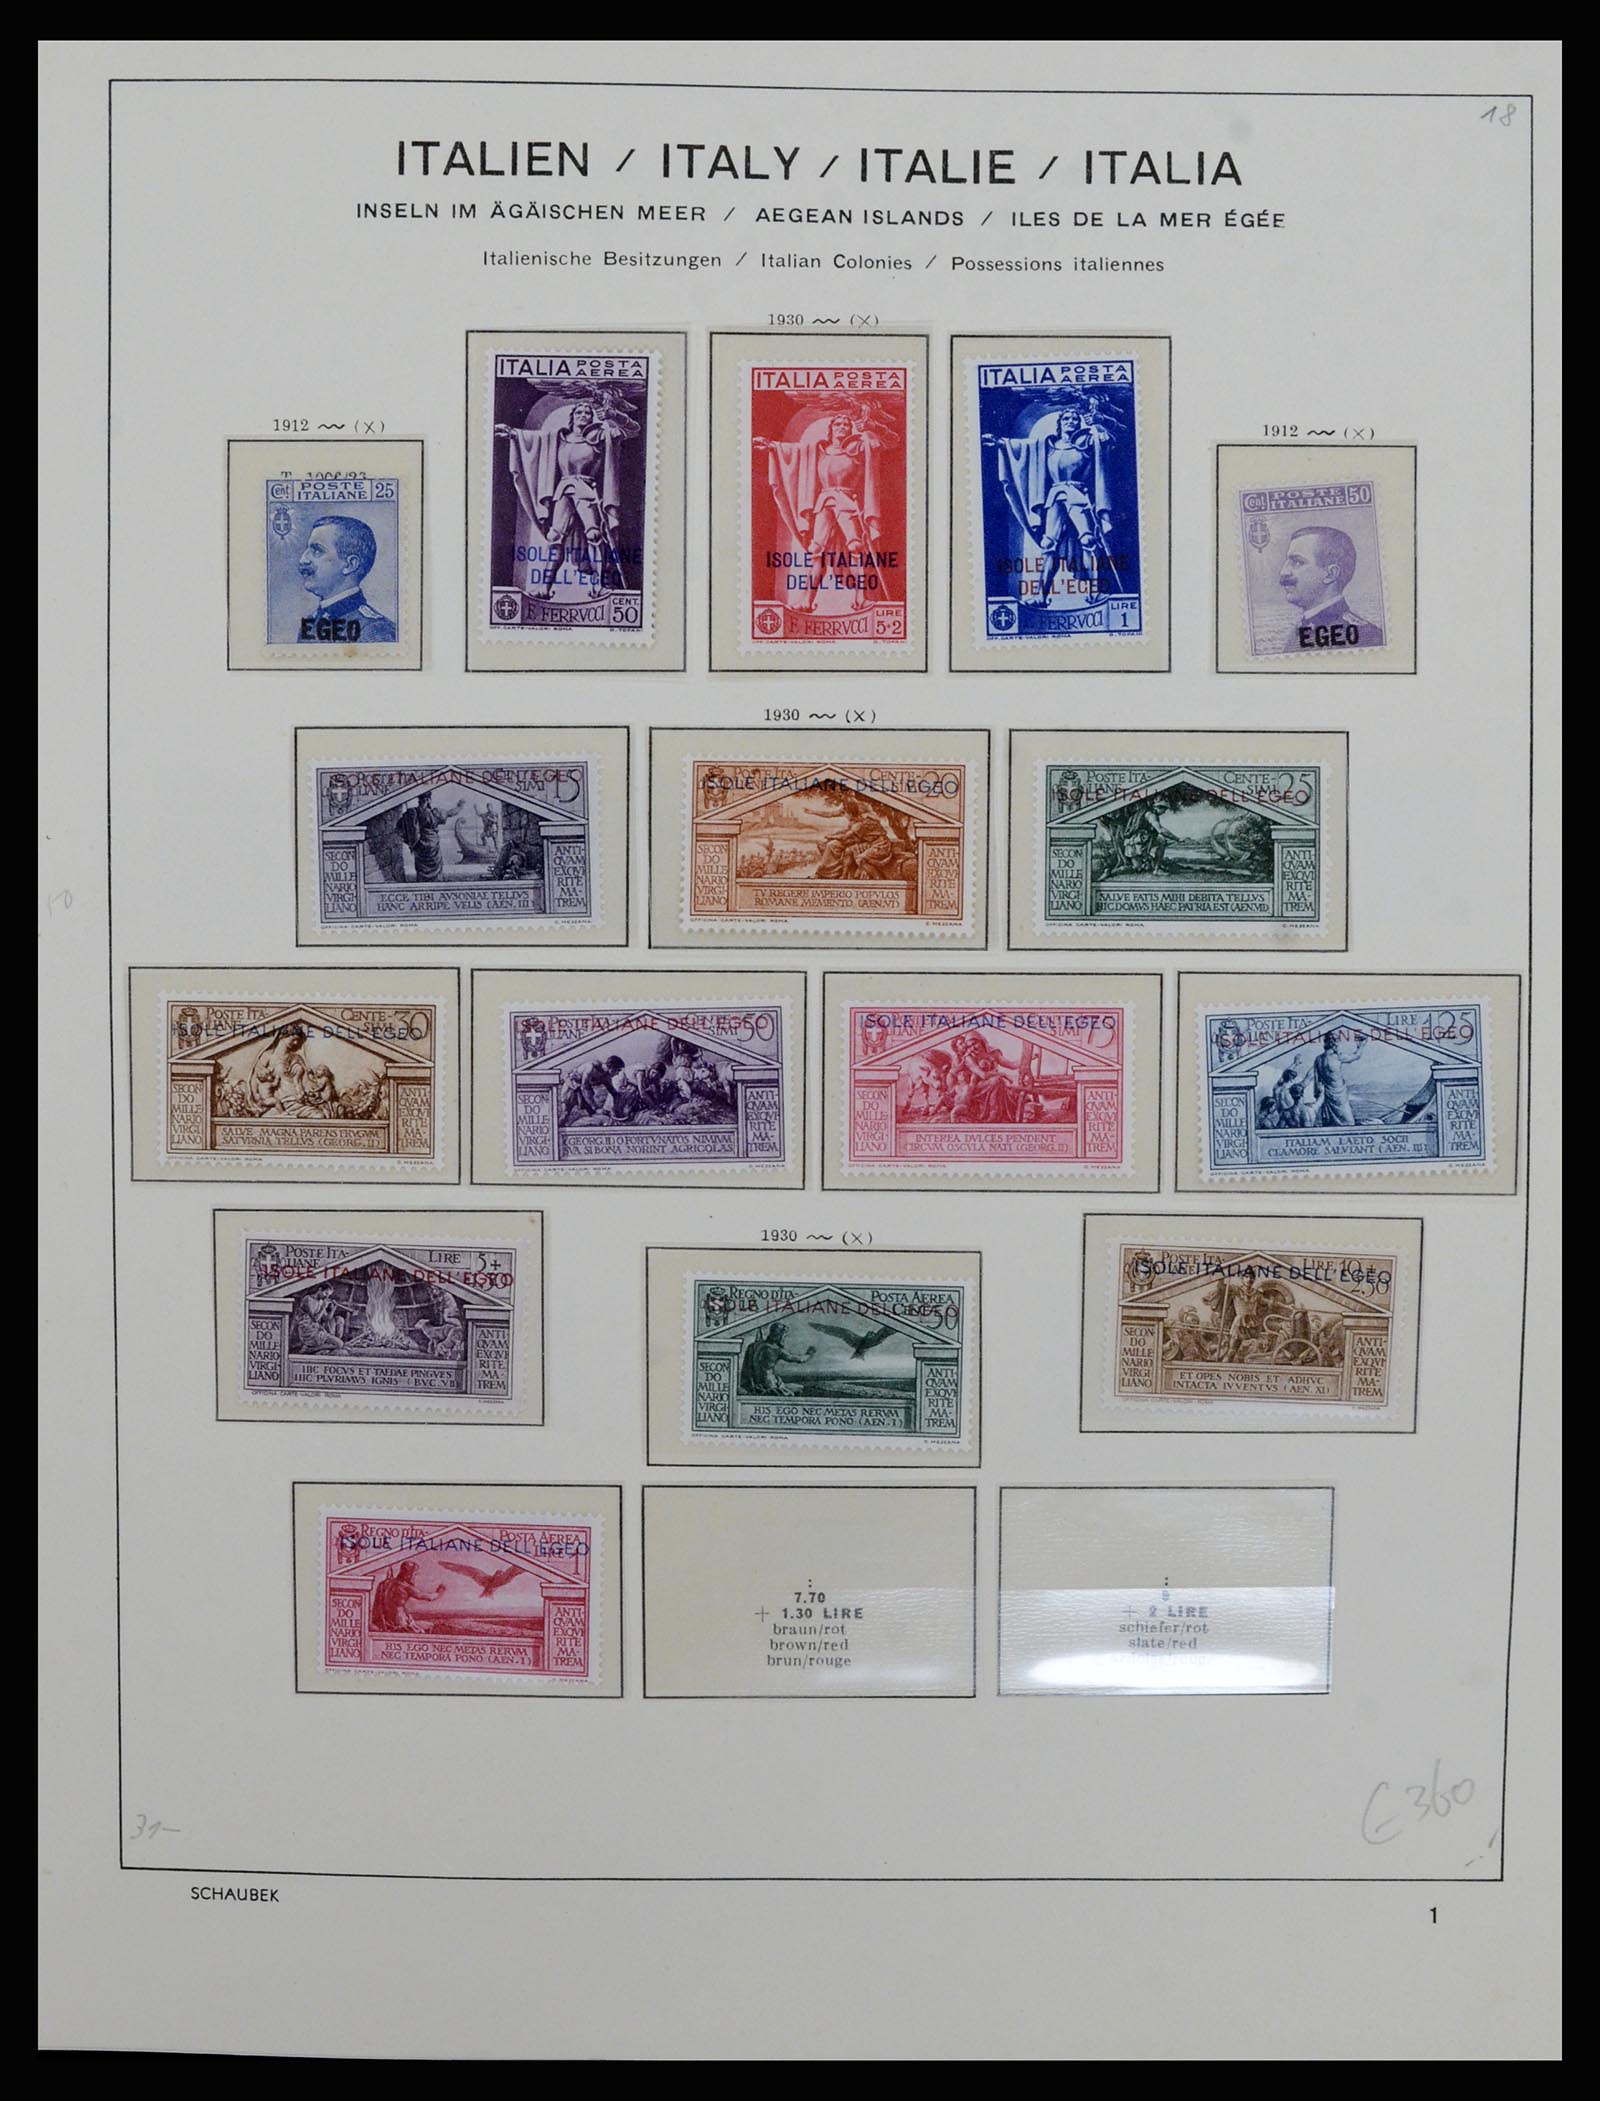 36577 027 - Stamp collection 36577 Italiaanse gebieden 1870-1940.